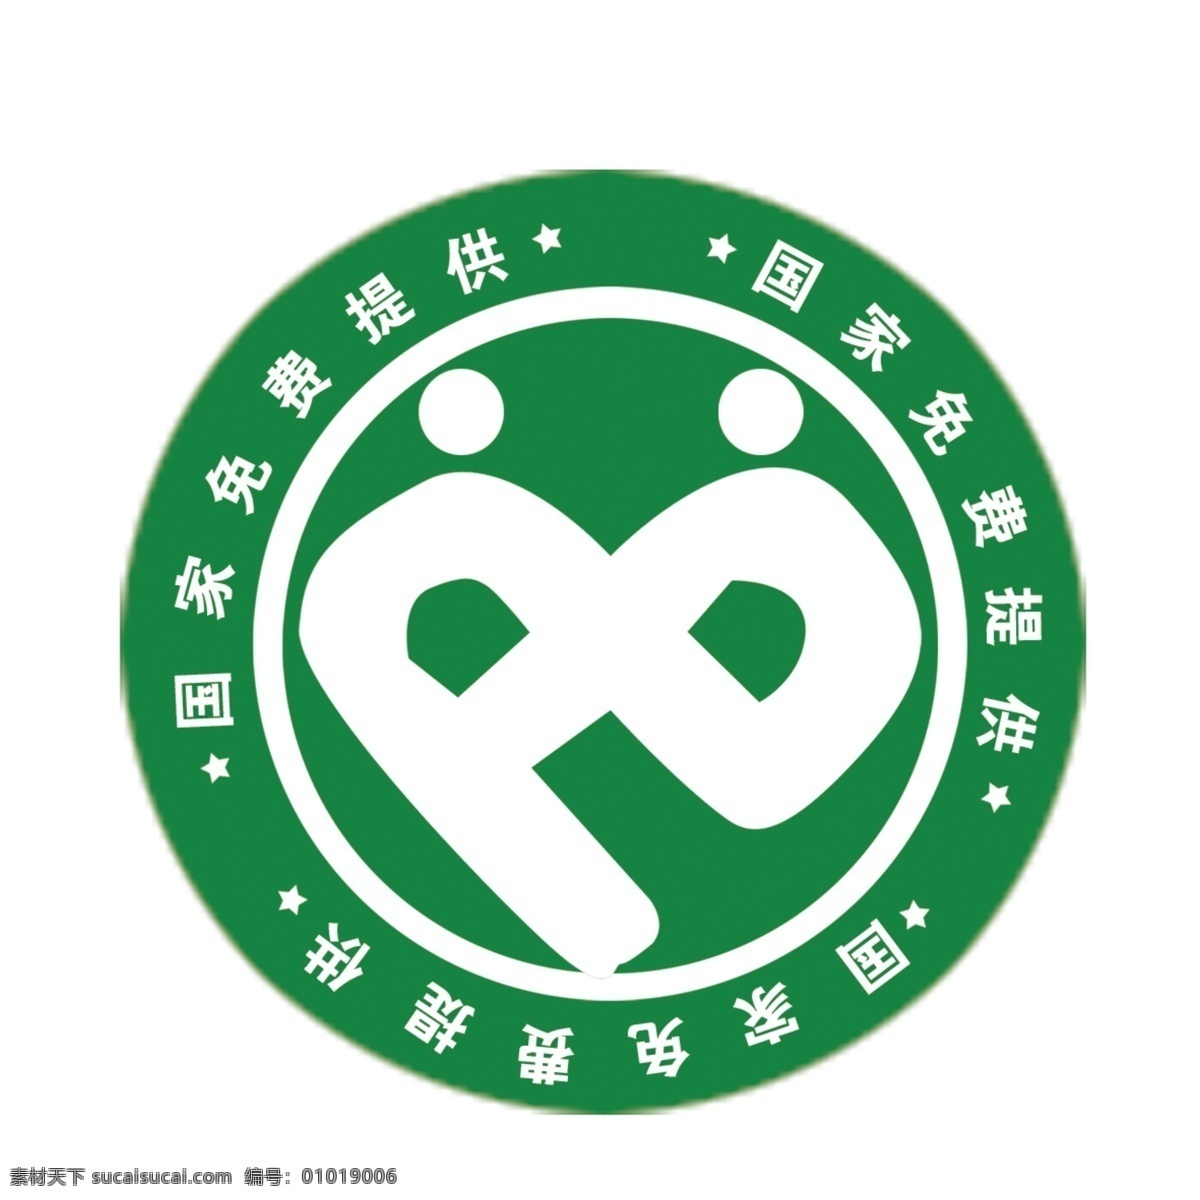 2012 年 国家 新 颁布 计生 标志 国家免费提供 五角星 人型 绿色圆环 标志设计 广告设计模板 源文件